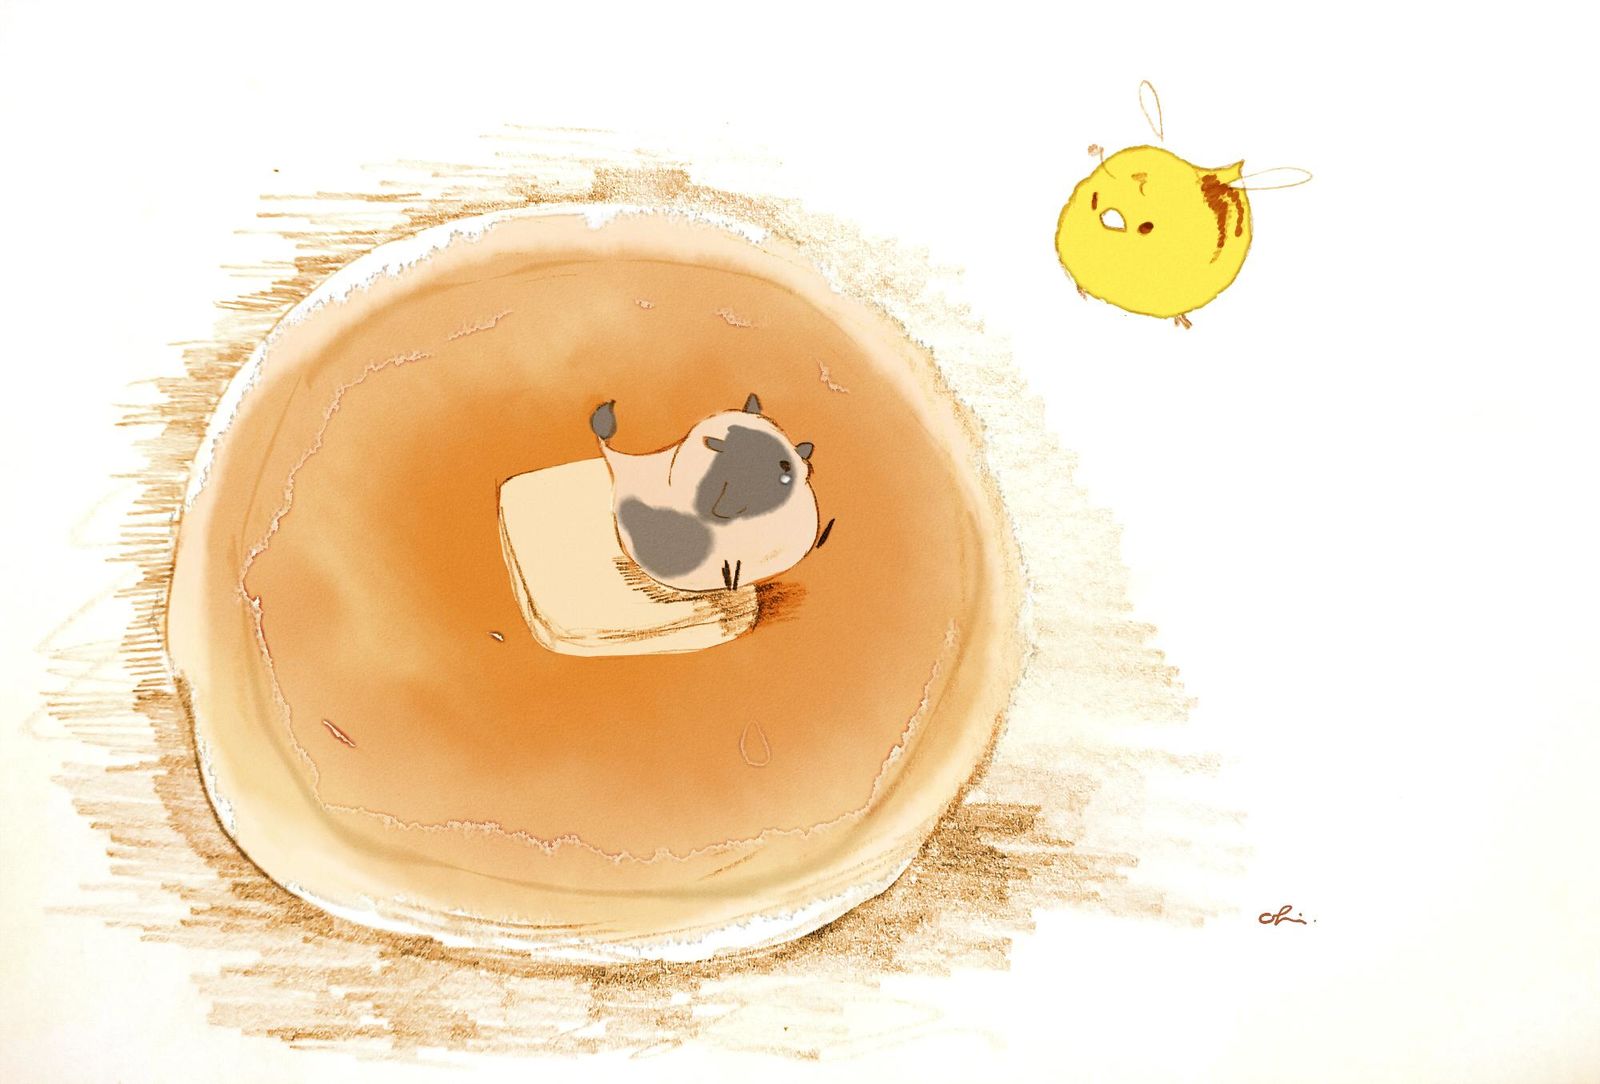 蜂蜜黄油烤饼插画图片壁纸